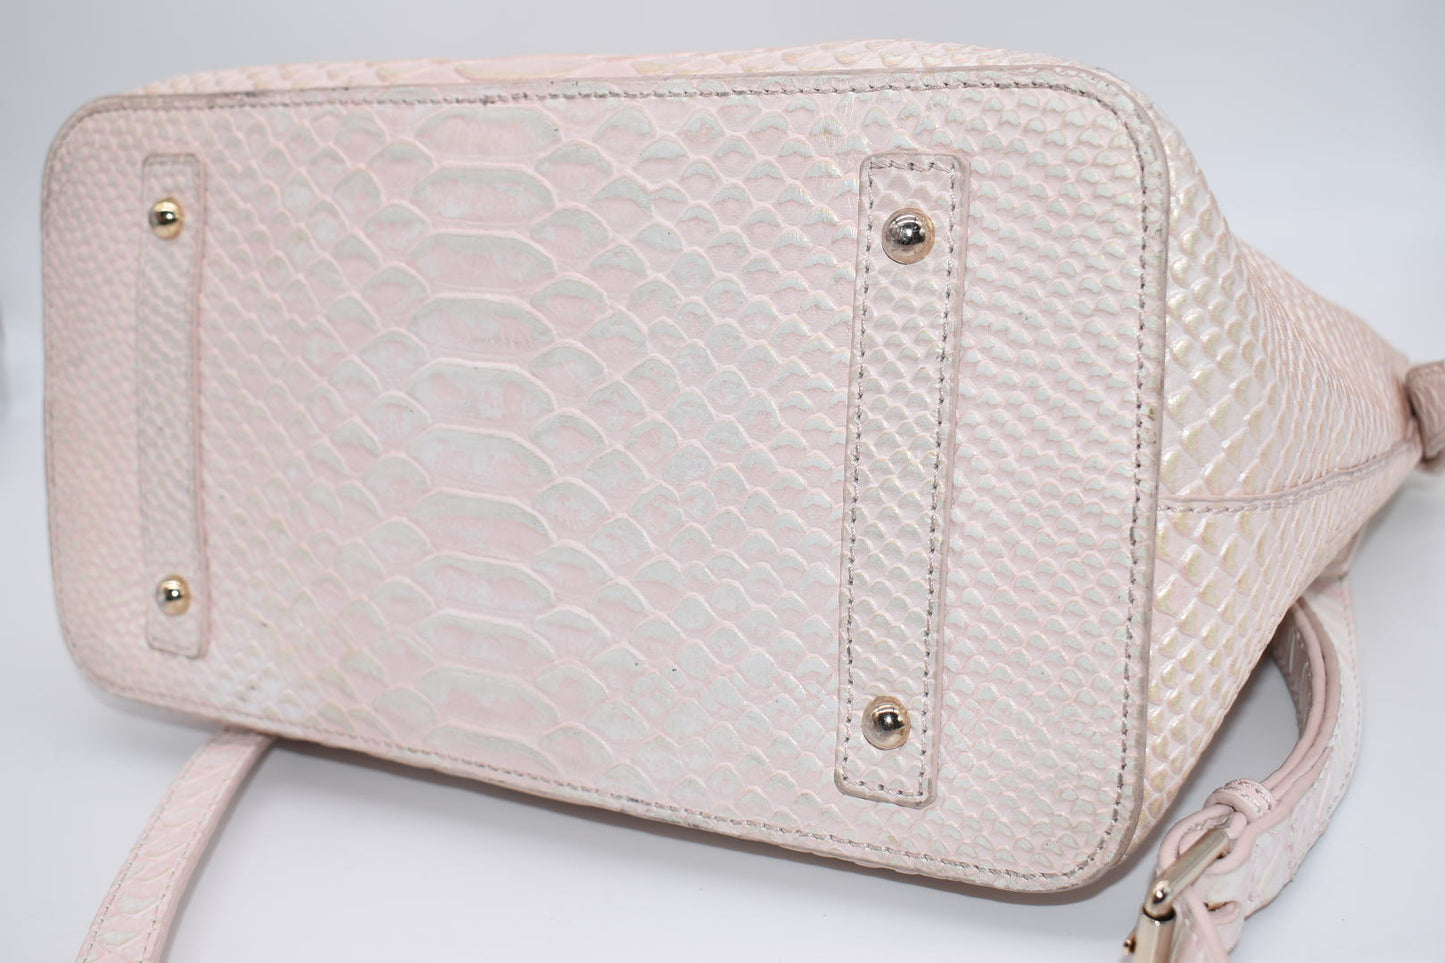 Dooney & Bourke Pink Pearl Croc Domed Satchel Bag